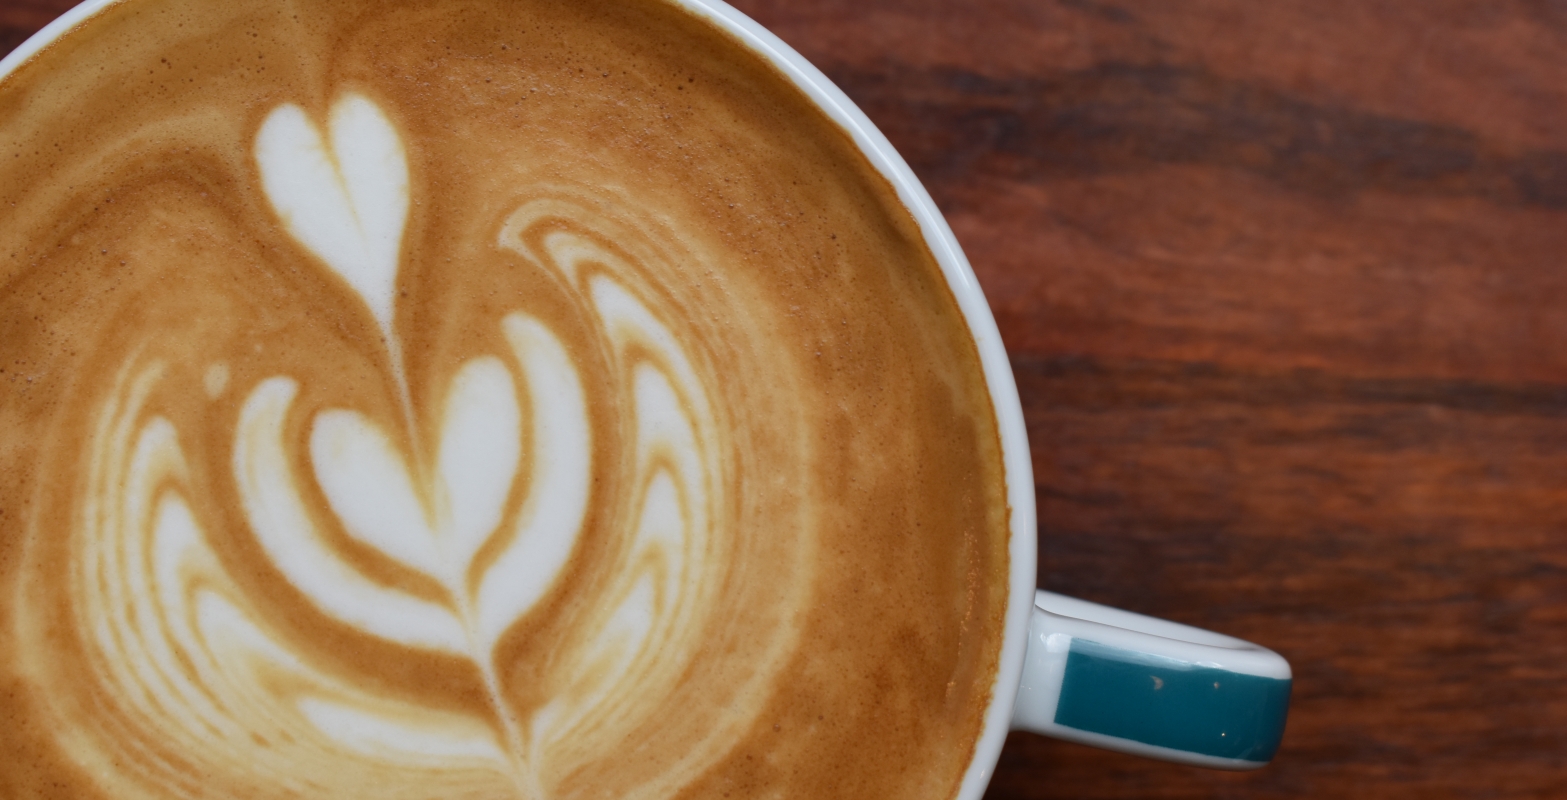 Coffee Latte with Heart Foam Design